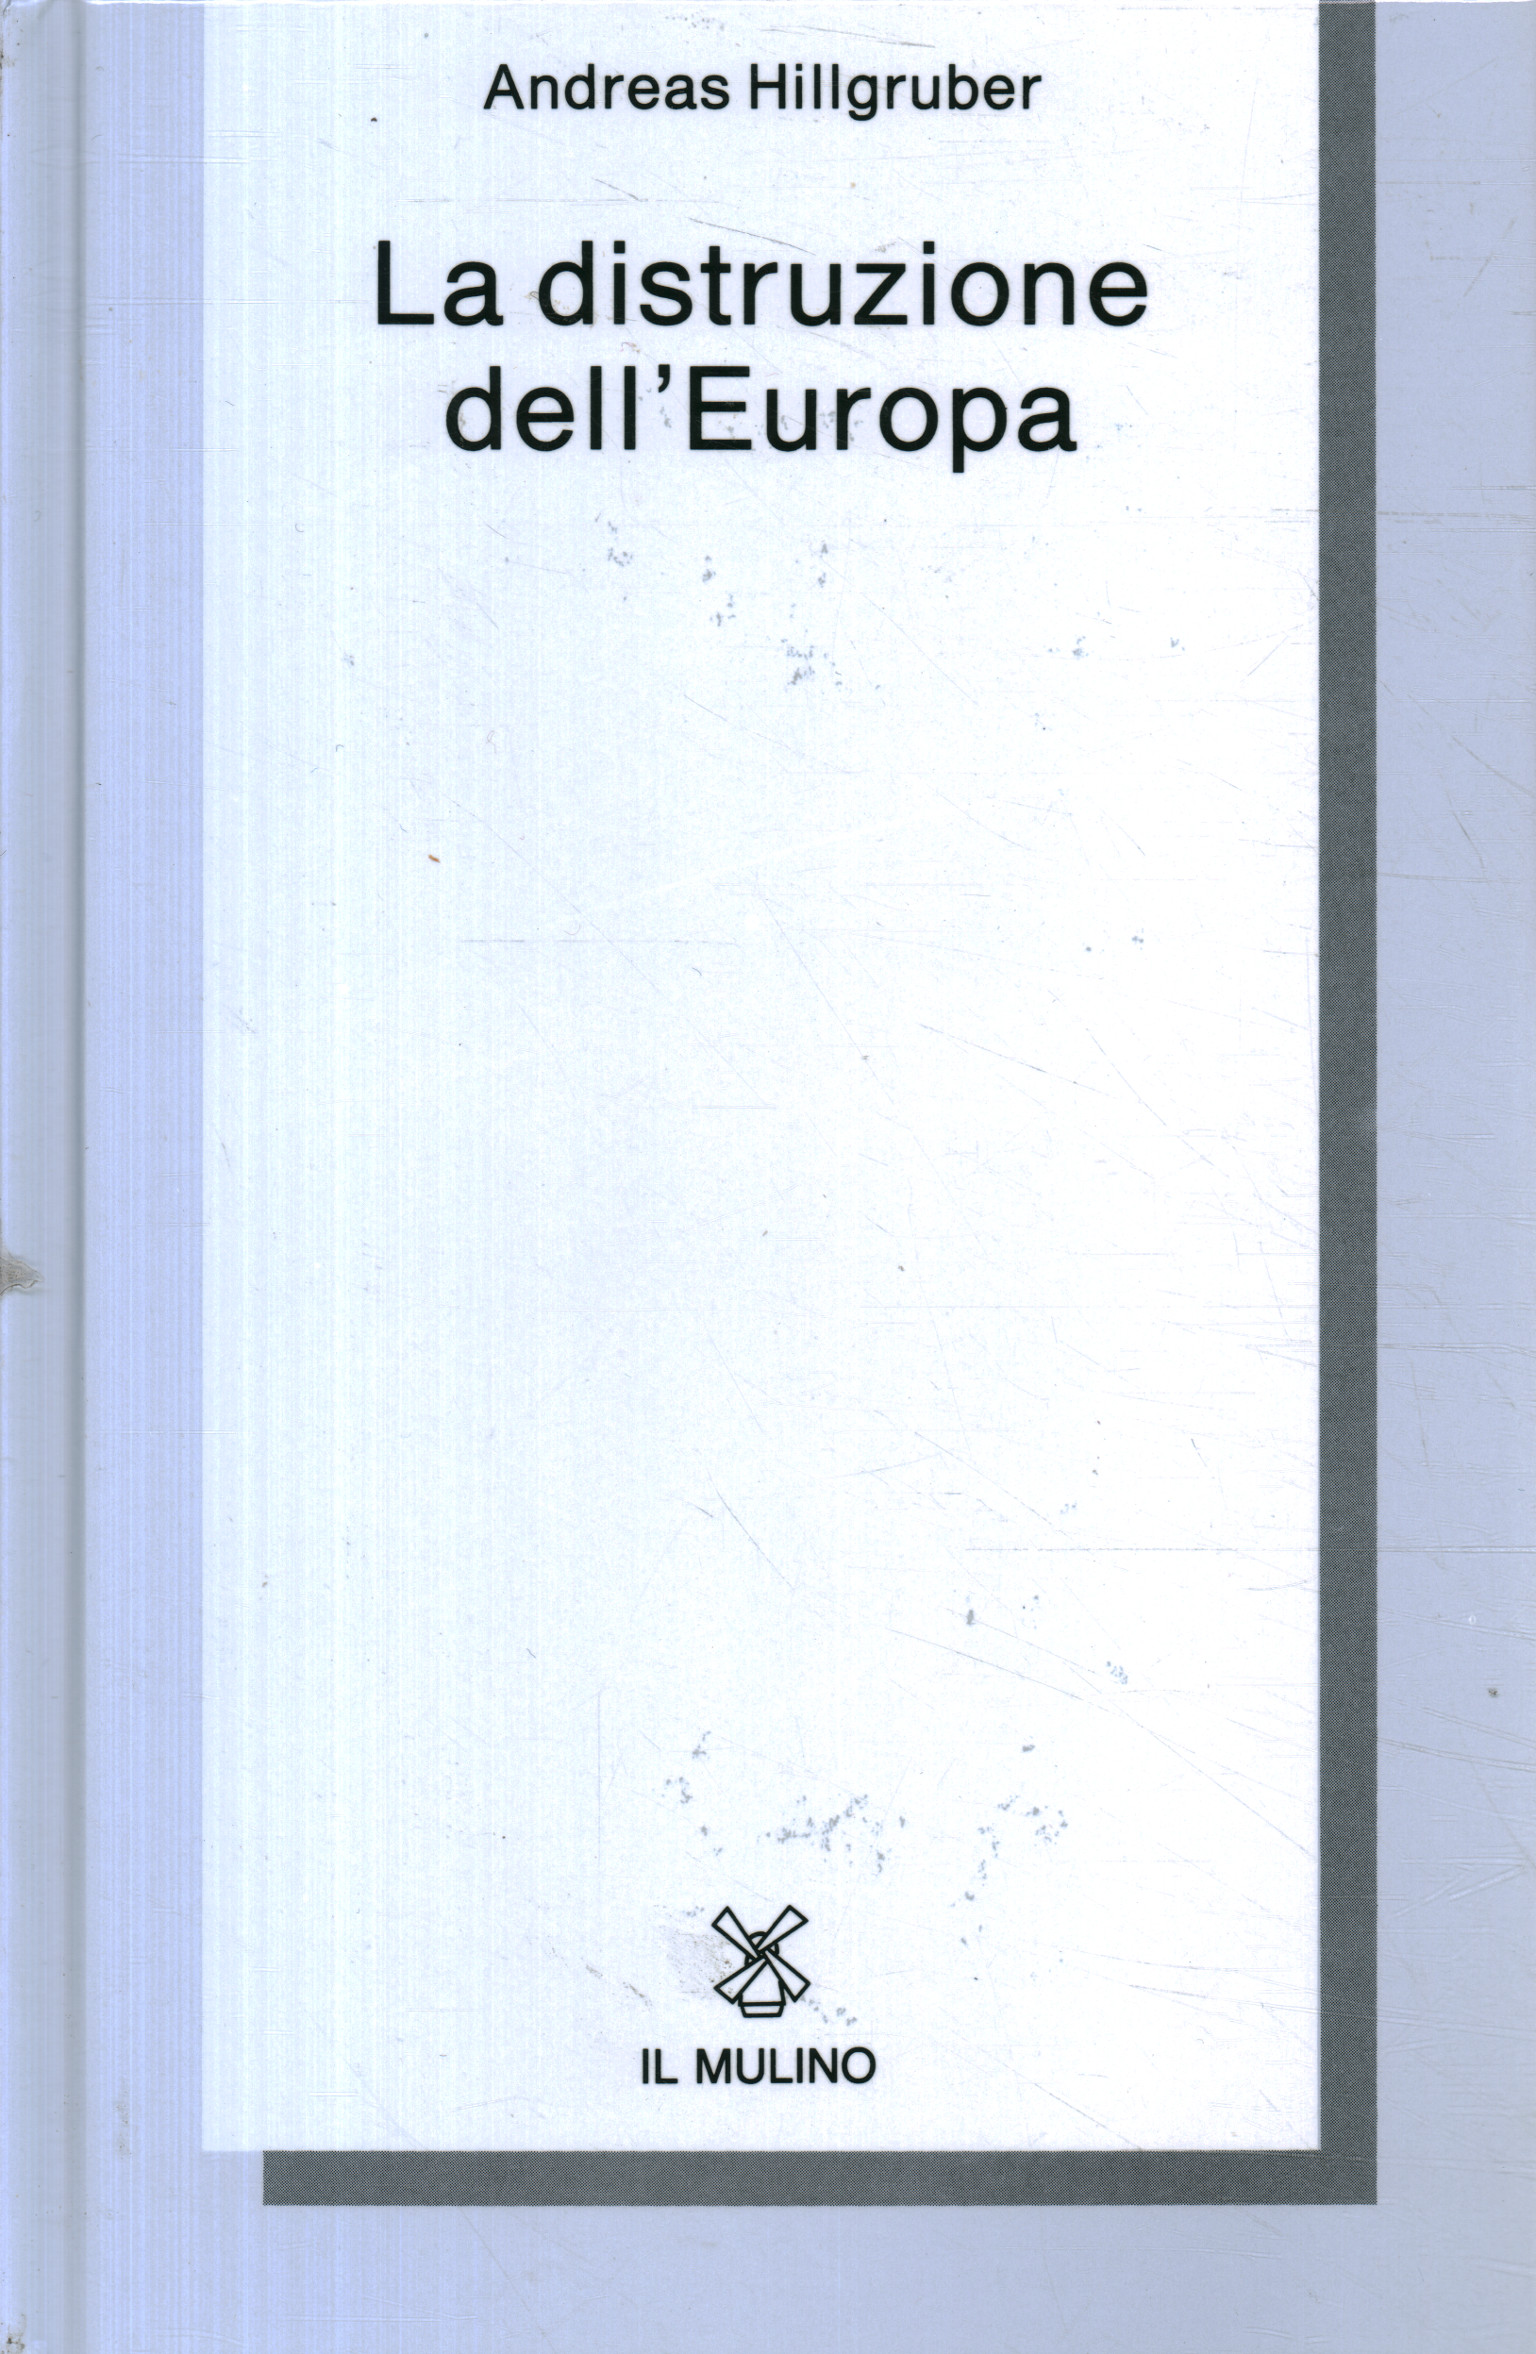 Libri - Storia - Guerre mondiali ,La distruzione dell'Europa